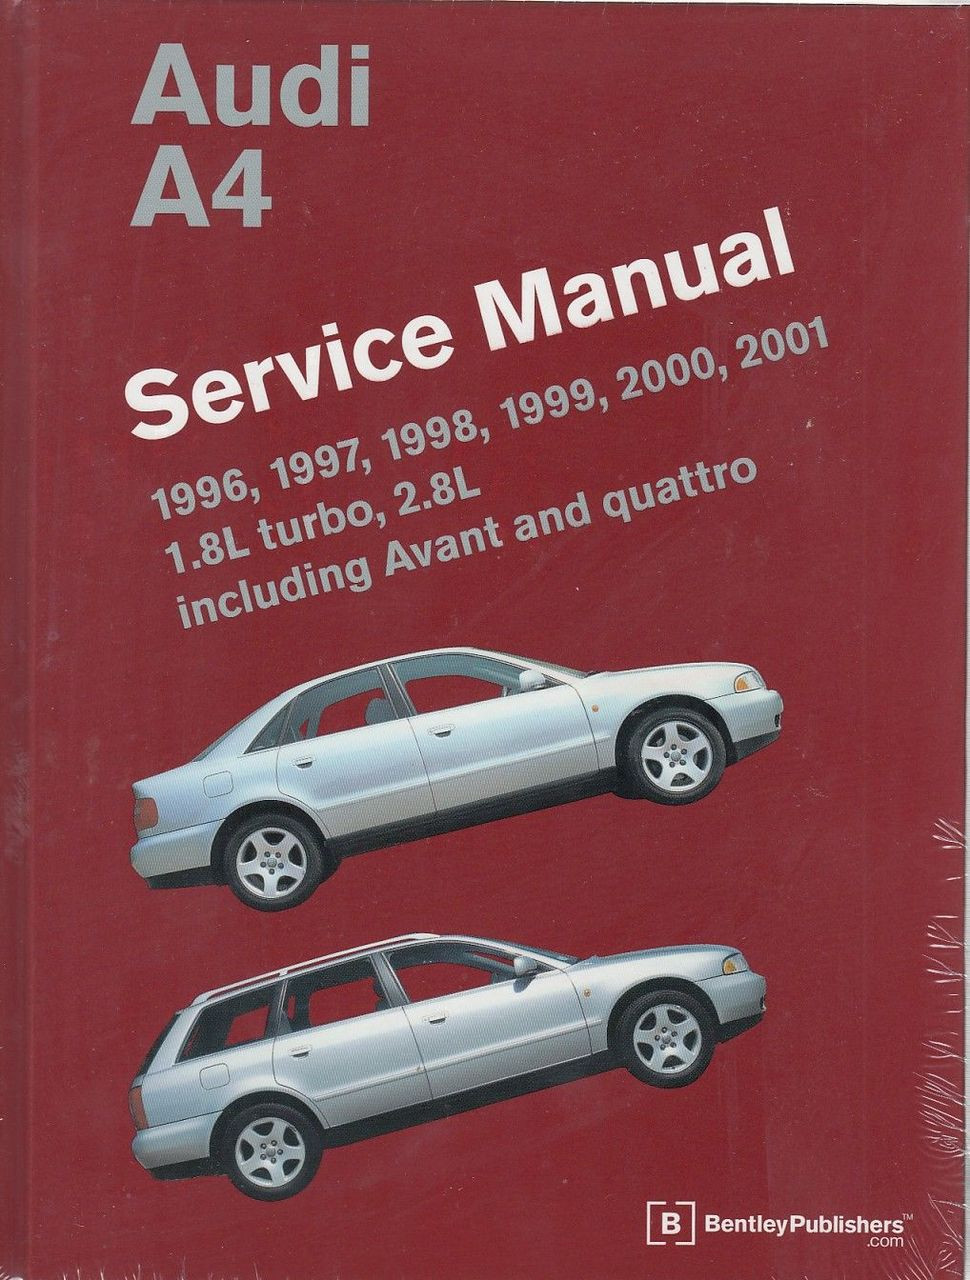 2009 Audi A4 Manual Pdf